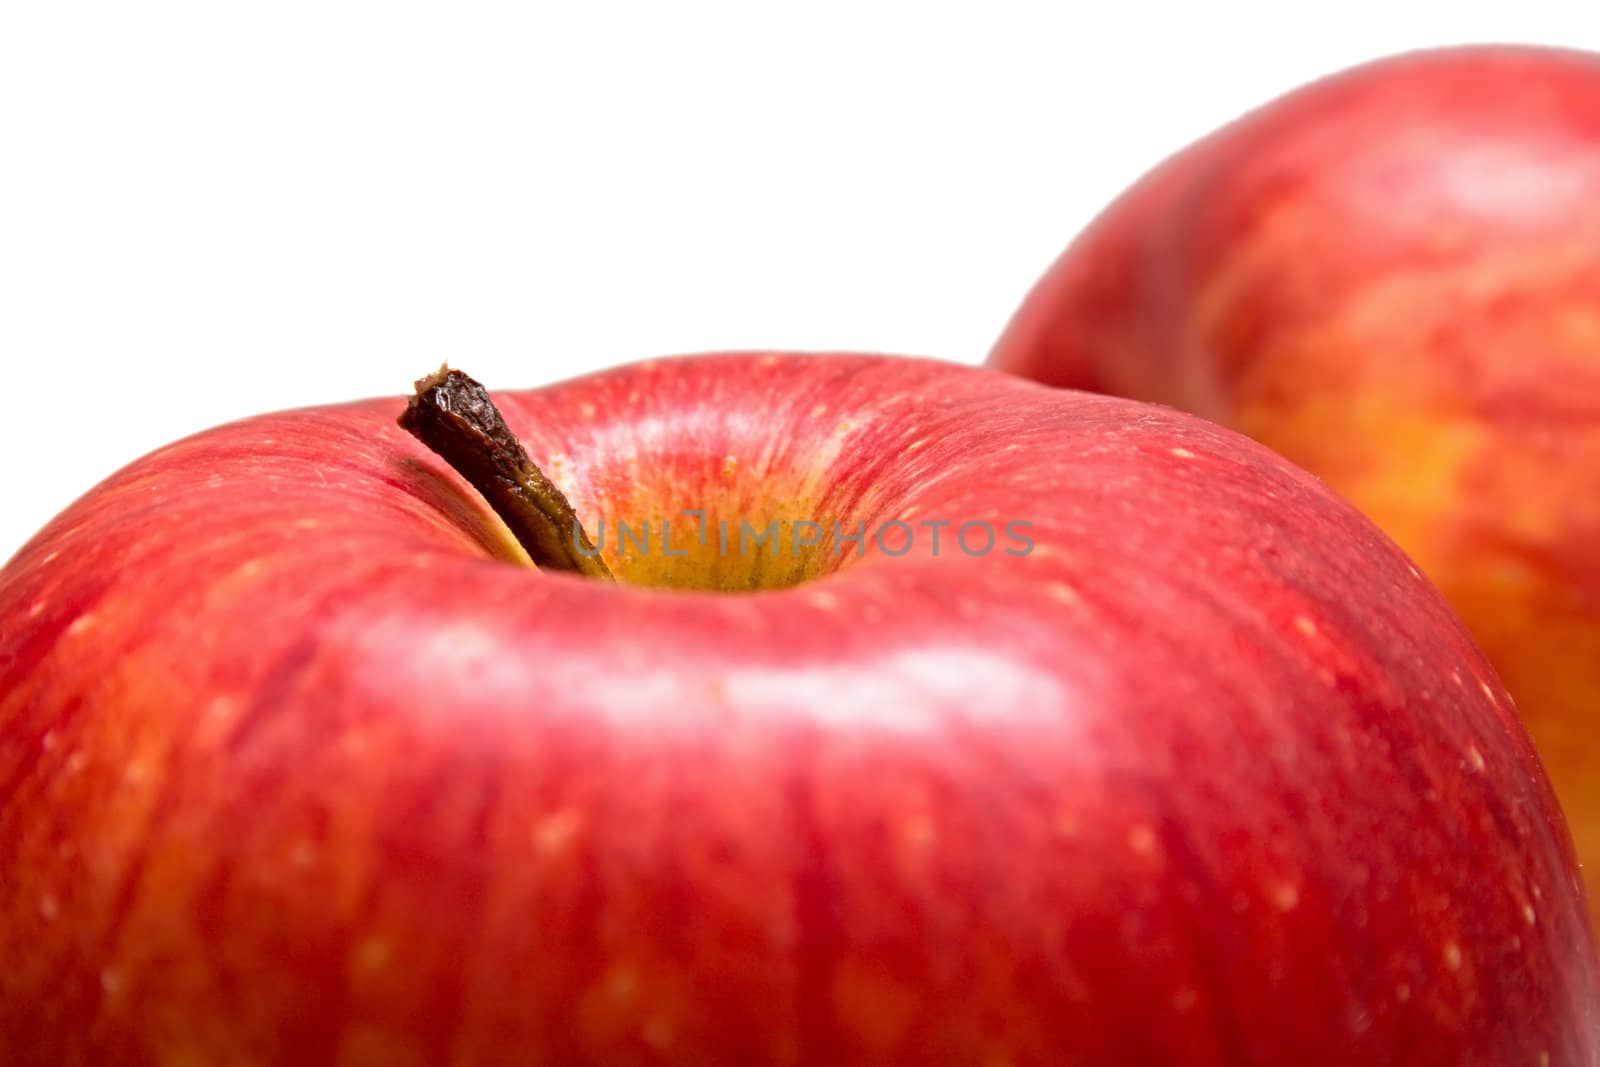 macro red apples by vikiri